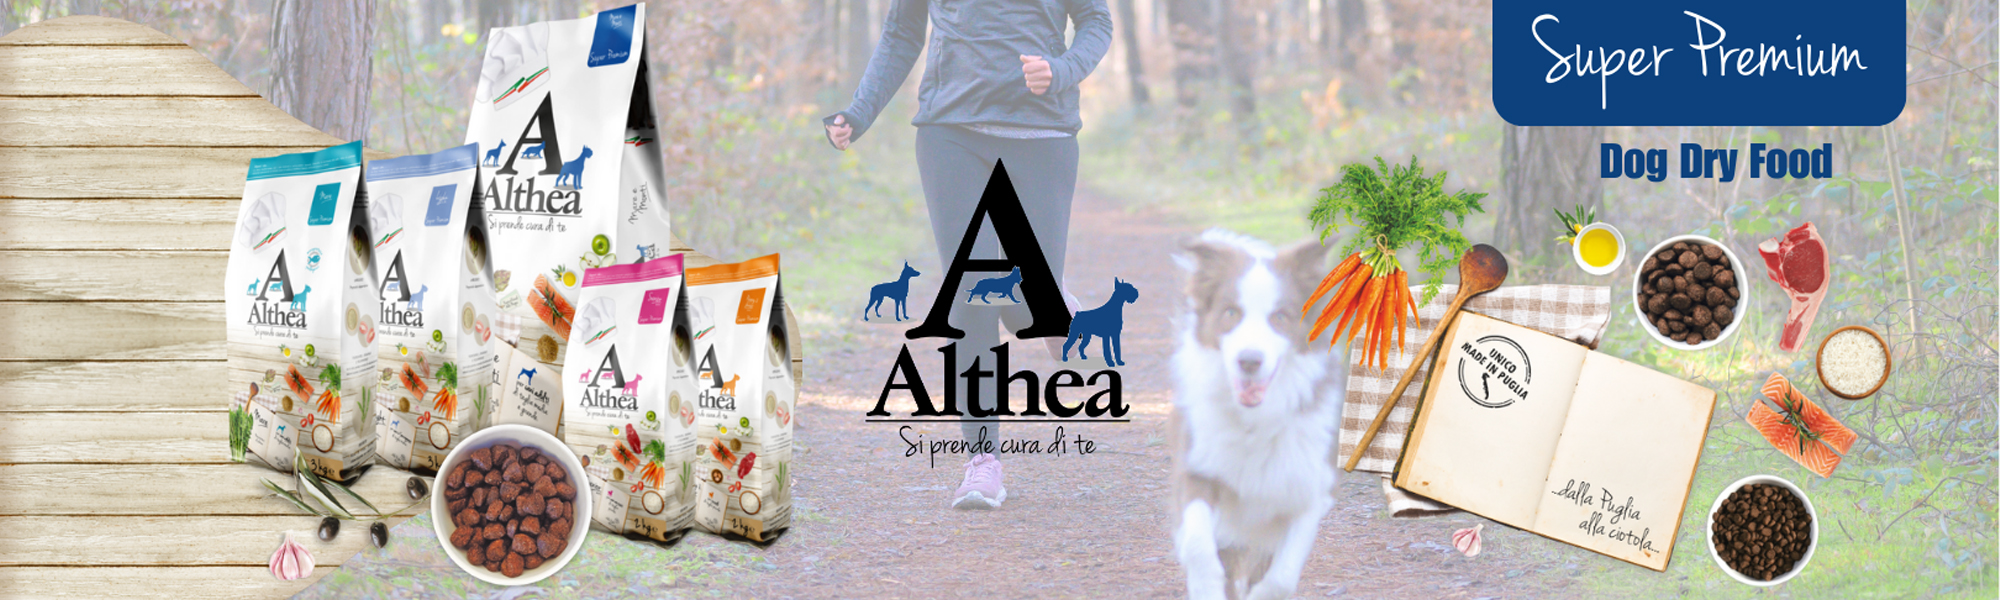 Althea Super Premium